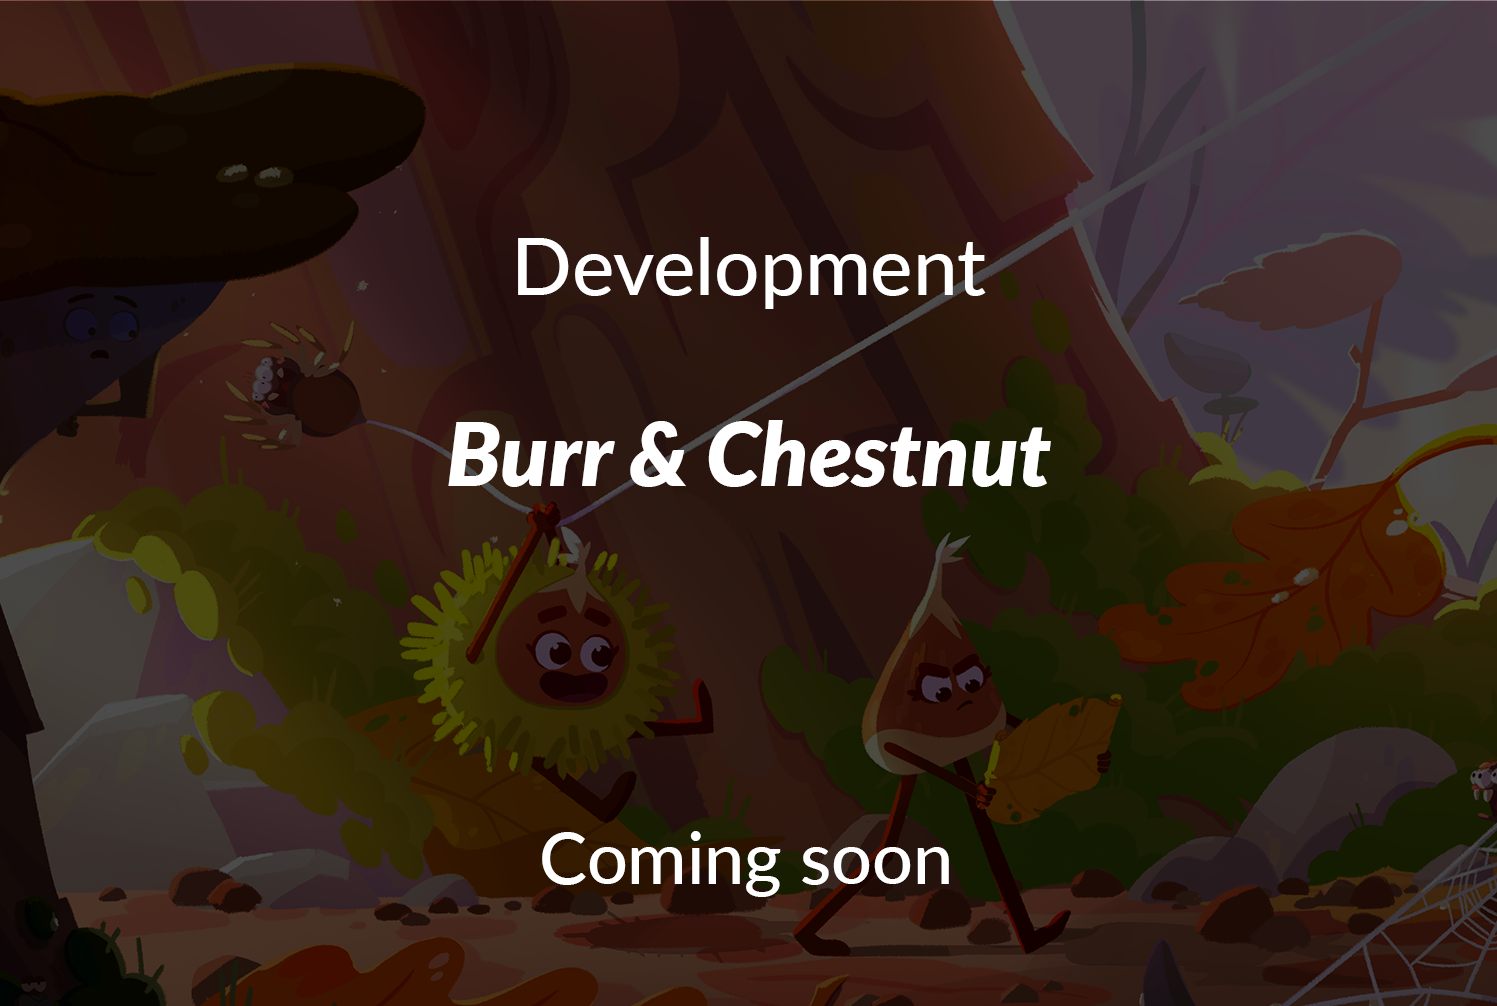 Burr & Chestnut